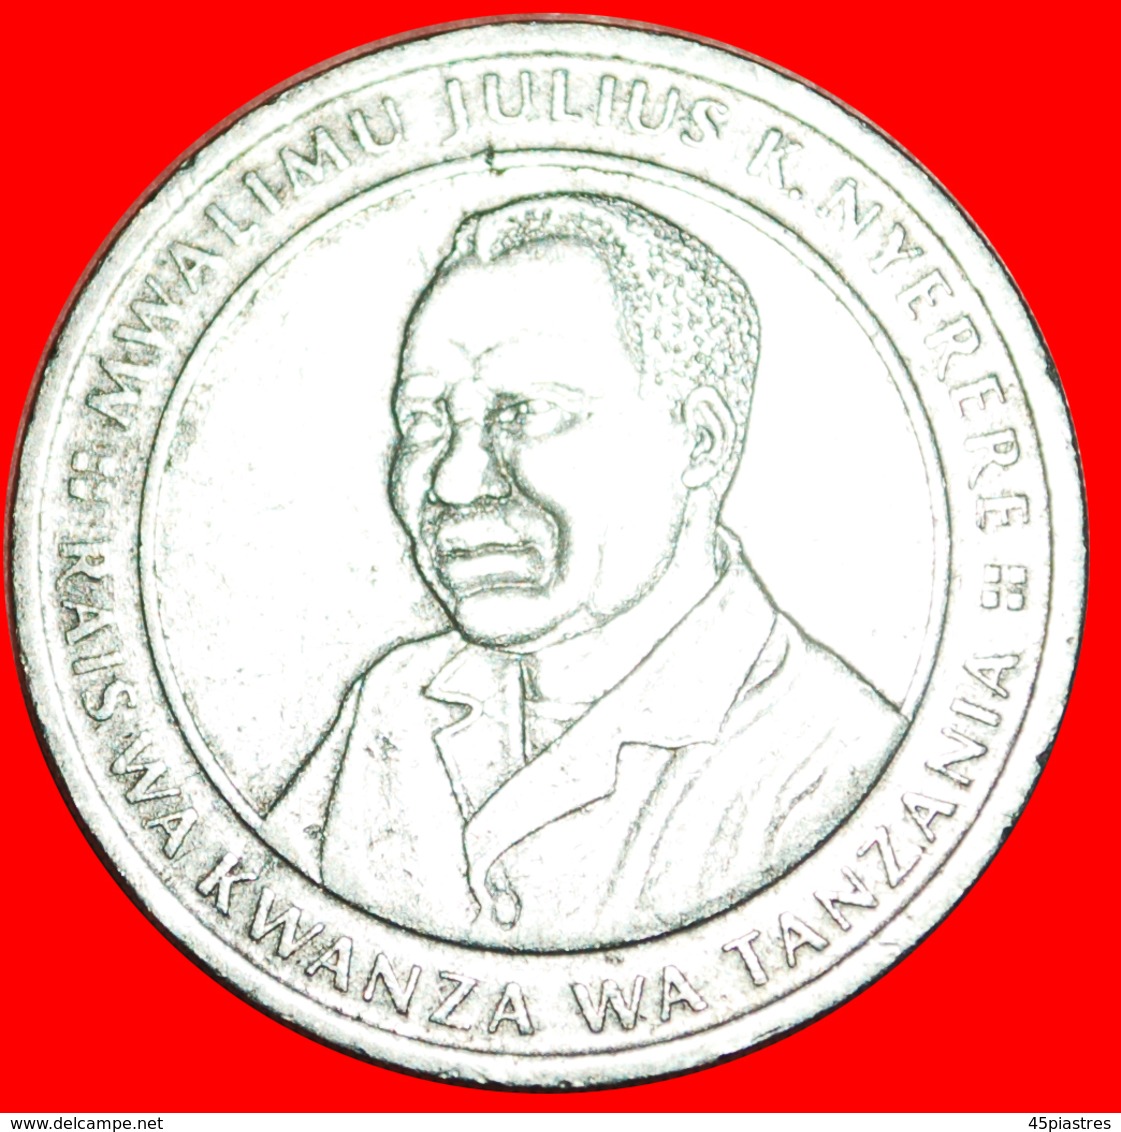 √ NEAR EDGE* TANZANIA ★ 10 SHILINGI 1990! LOW START ★ NO RESERVE! President J. K. Nyerere (1964-1985) - Tansania